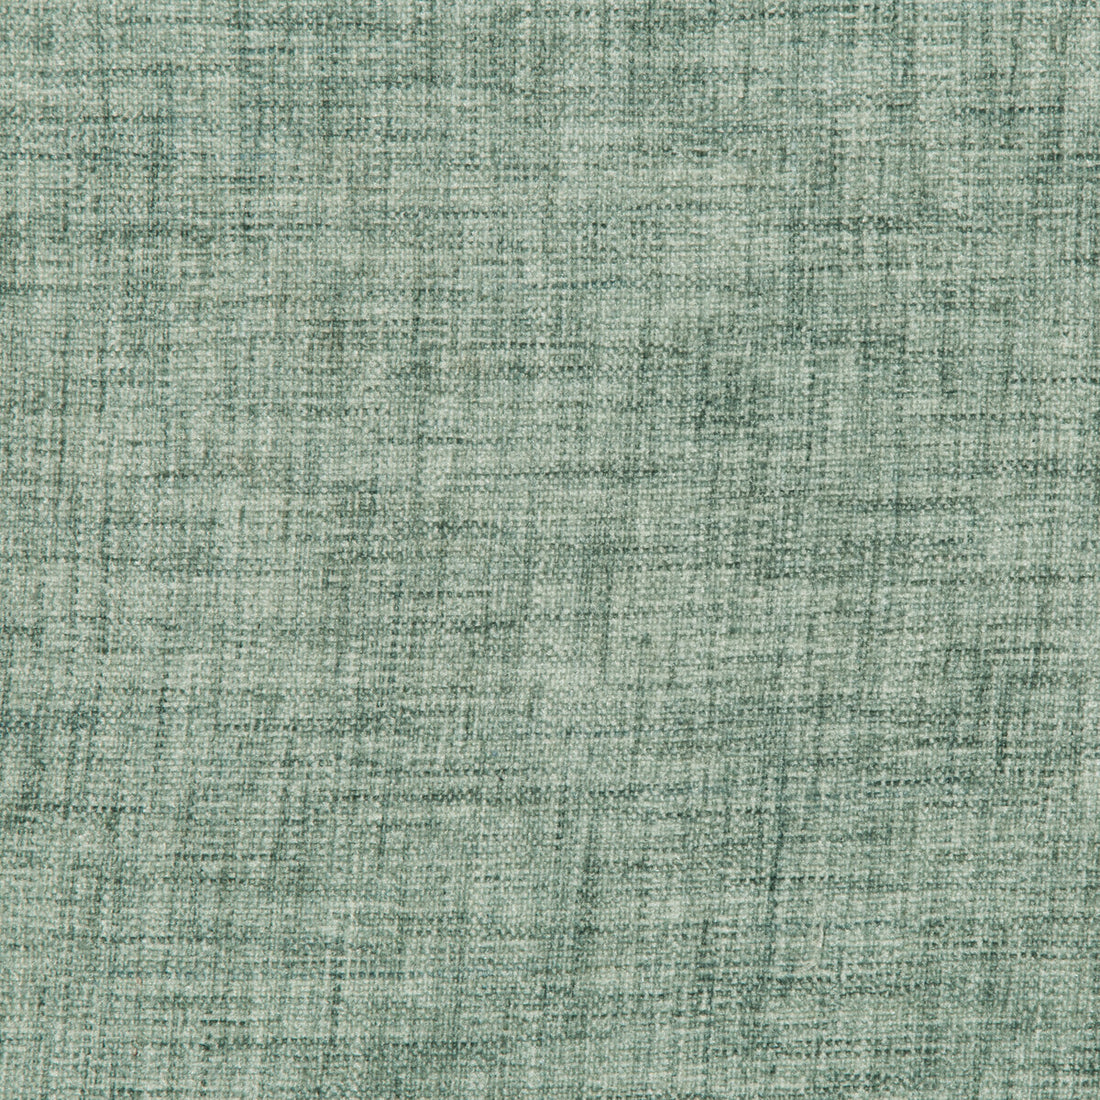 Kravet Basics fabric in 35775-323 color - pattern 35775.323.0 - by Kravet Basics